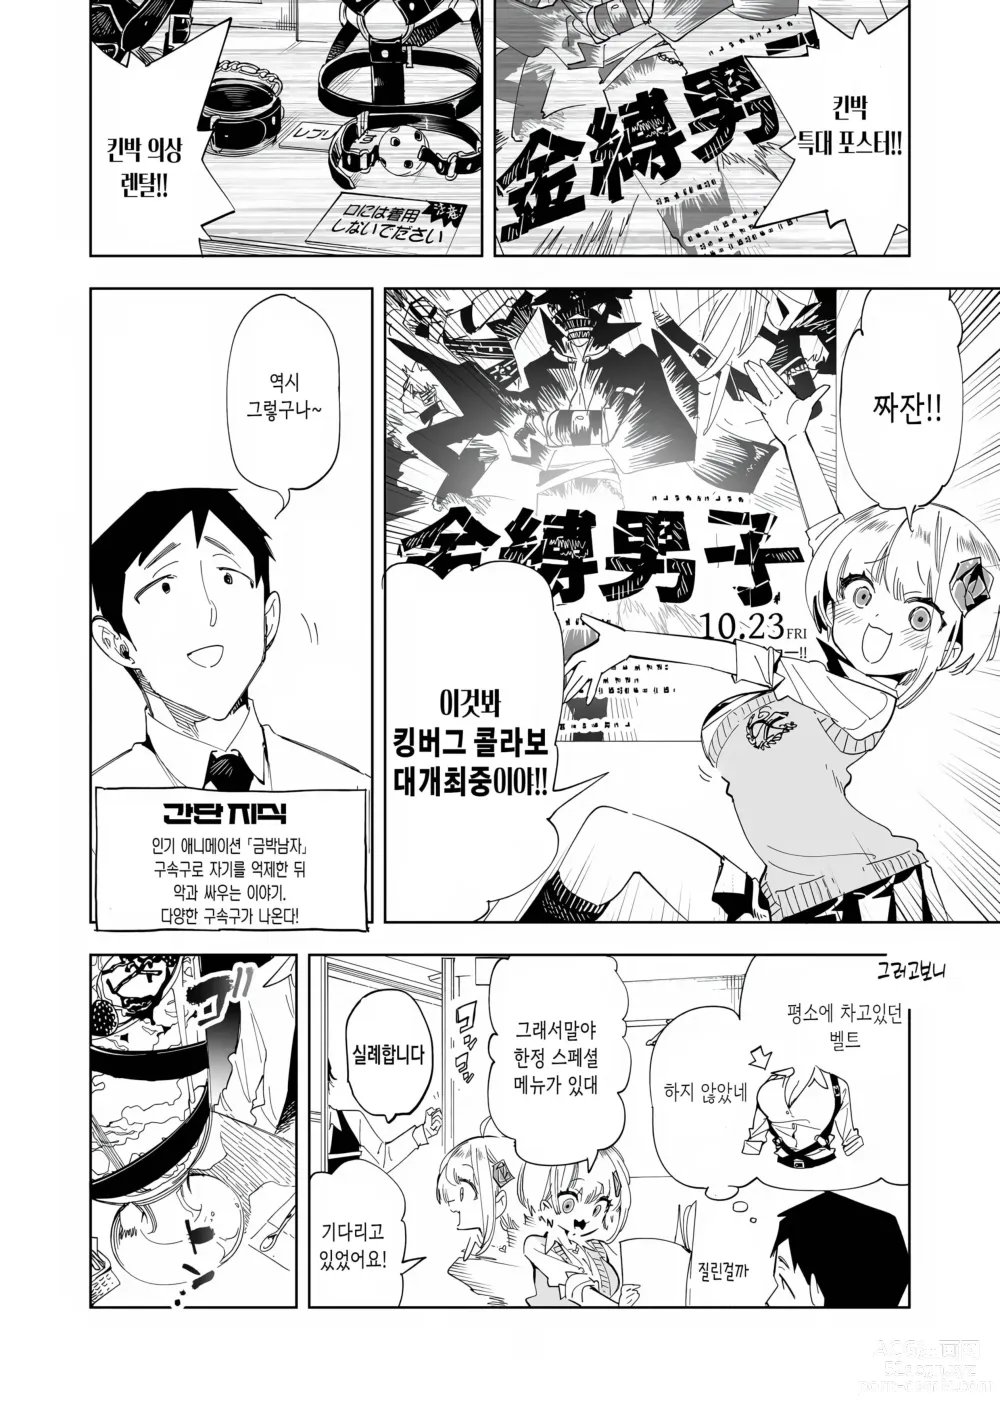 Page 6 of doujinshi 오빠, 우리들이랑 커피 마시러 갈래? 4